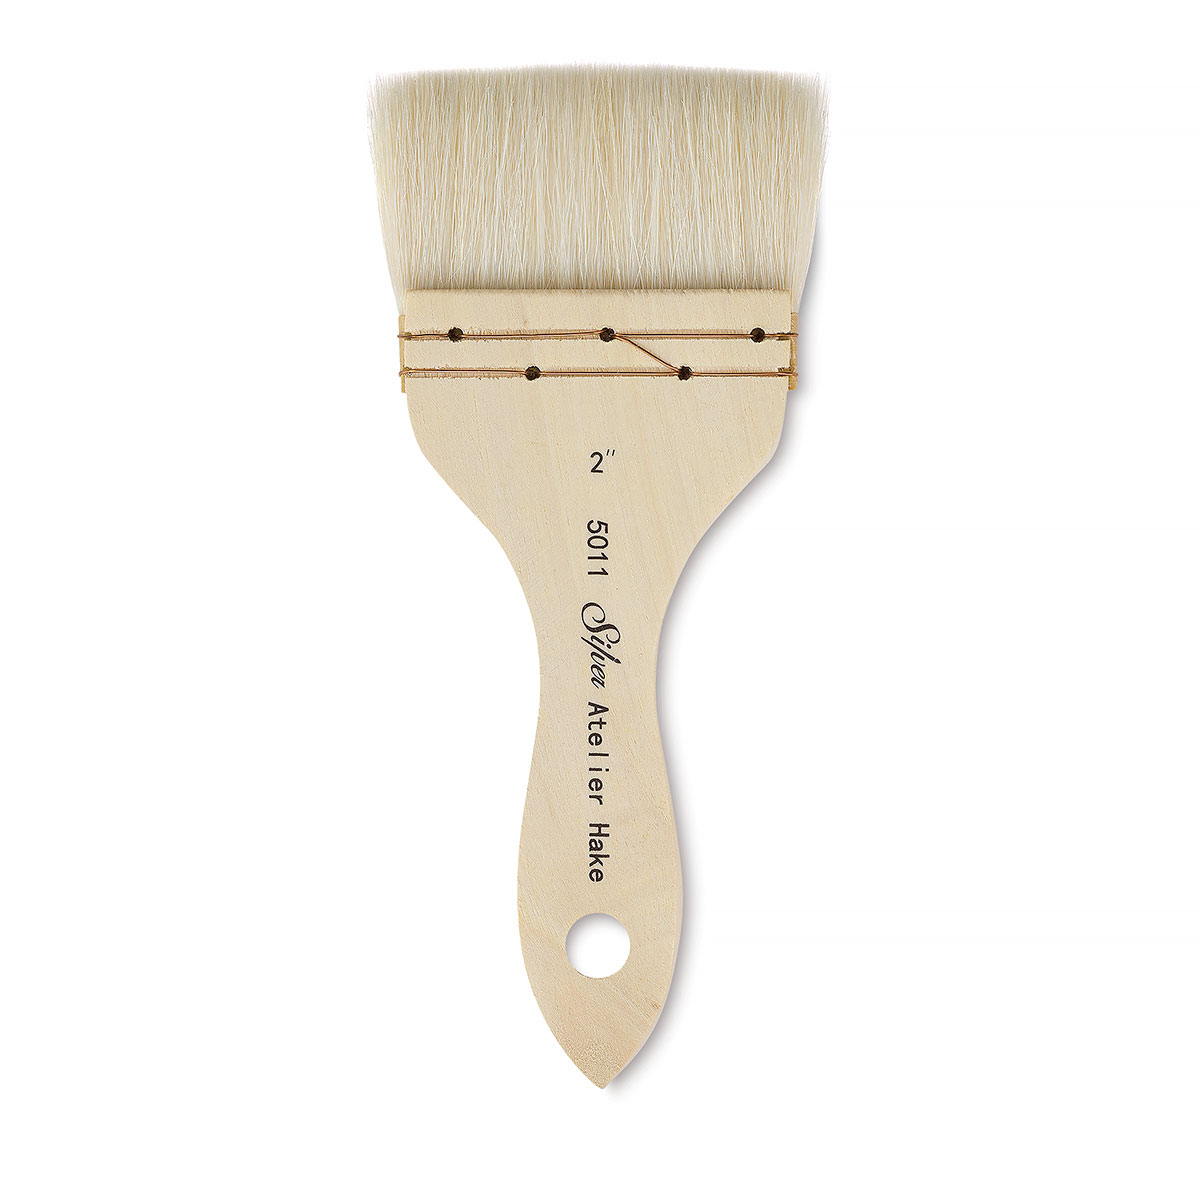 Hake Brush 1.5 – Posner's Art Store